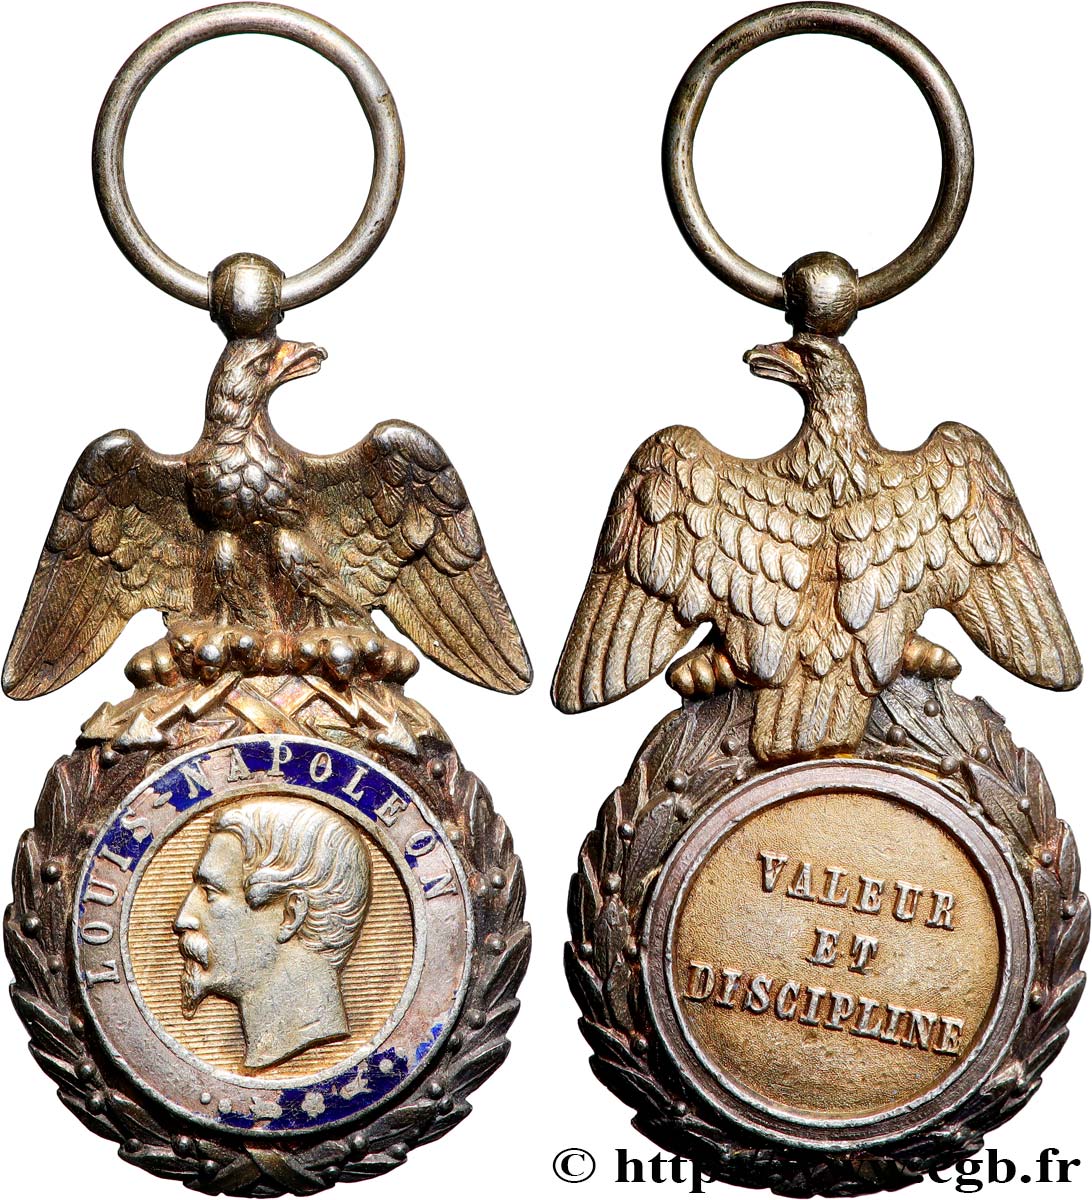 Diplôme et sa médaille MILITAIRE valeurs et discipline 1931-1932